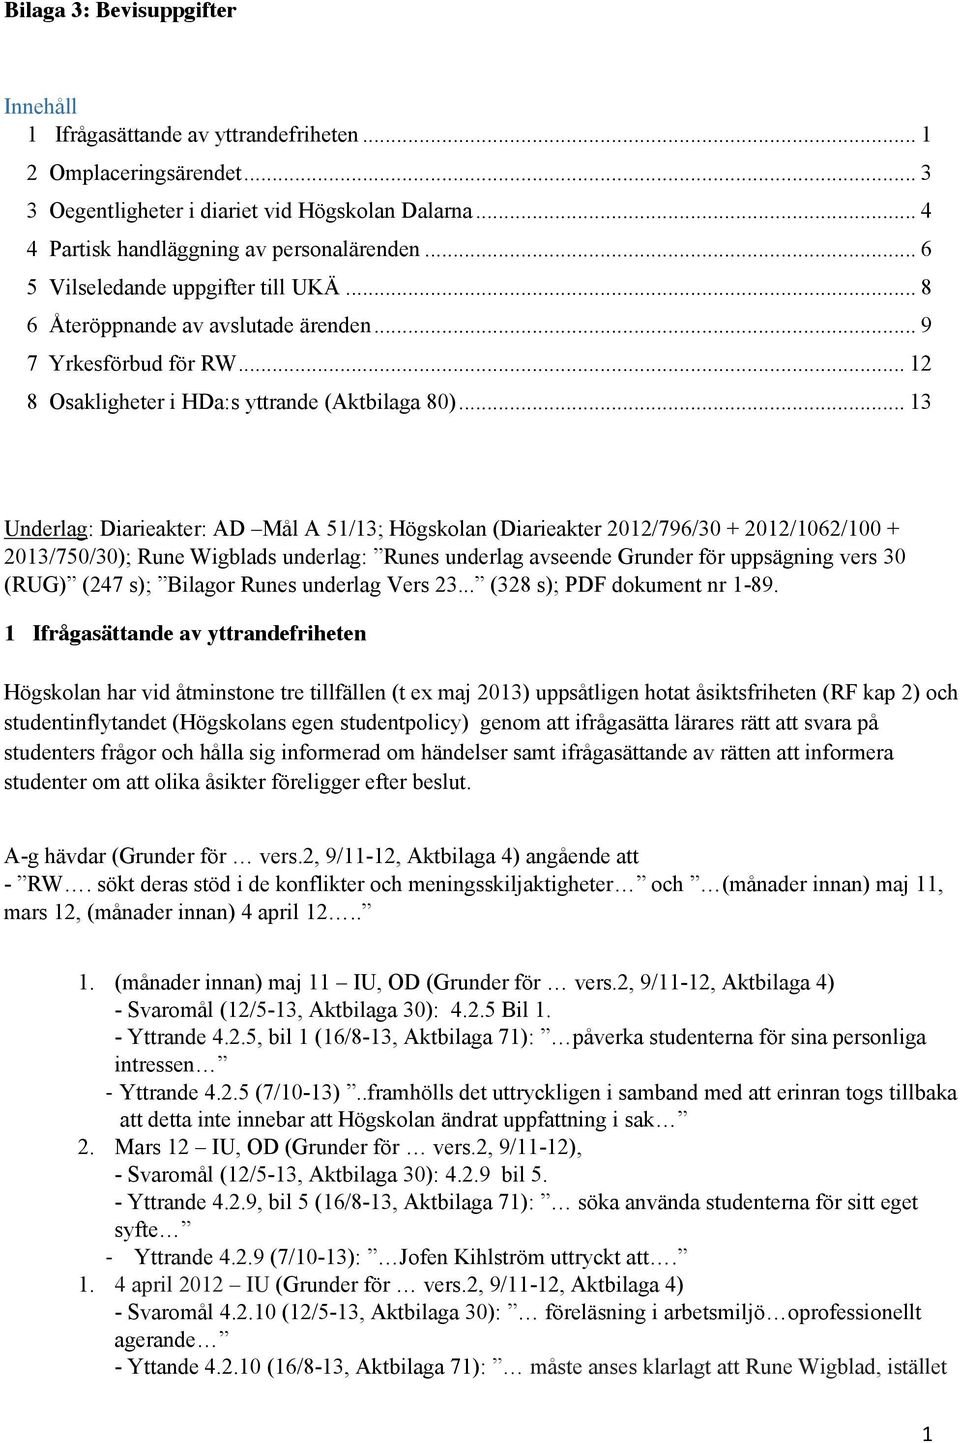 .. 13 Underlag: Diarieakter: AD Mål A 51/13; Högskolan (Diarieakter 2012/796/30 + 2012/1062/100 + 2013/750/30);; Rune Wigblads underlag: Runes underlag avseende Grunder för uppsägning vers 30 (RUG)